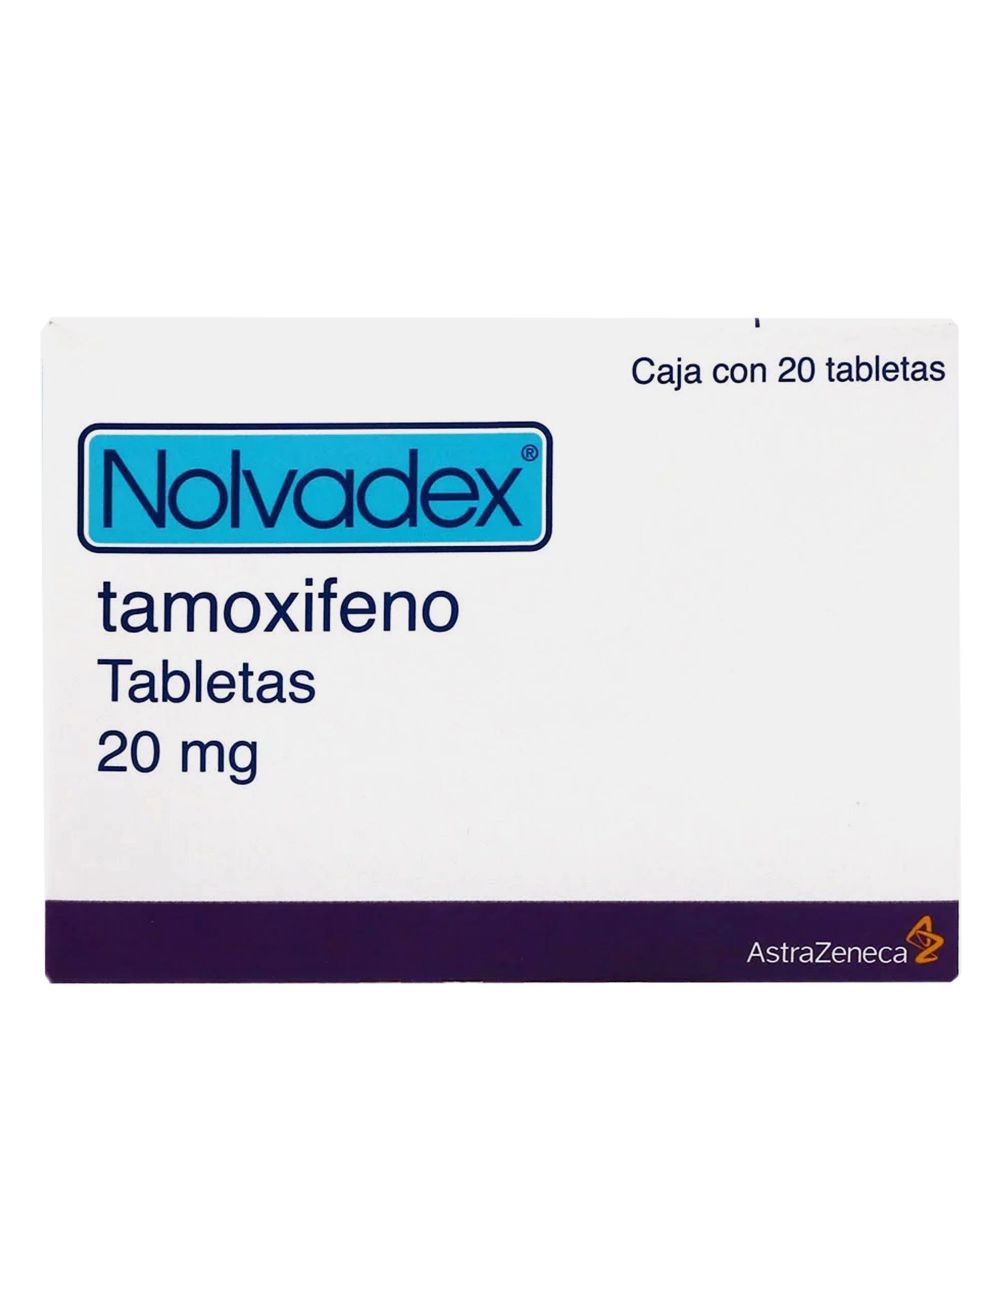 Nolvadex Tamoxifeno - 20 Tabs de 20 mg c/u. AstraZeneca - Es un medicamento no esteroide derivado del trifeniletileno que ejerce un complejo espectro de efectos farmacolgicos antagonistas y agonistas de los estrgenos en distintos tejidos